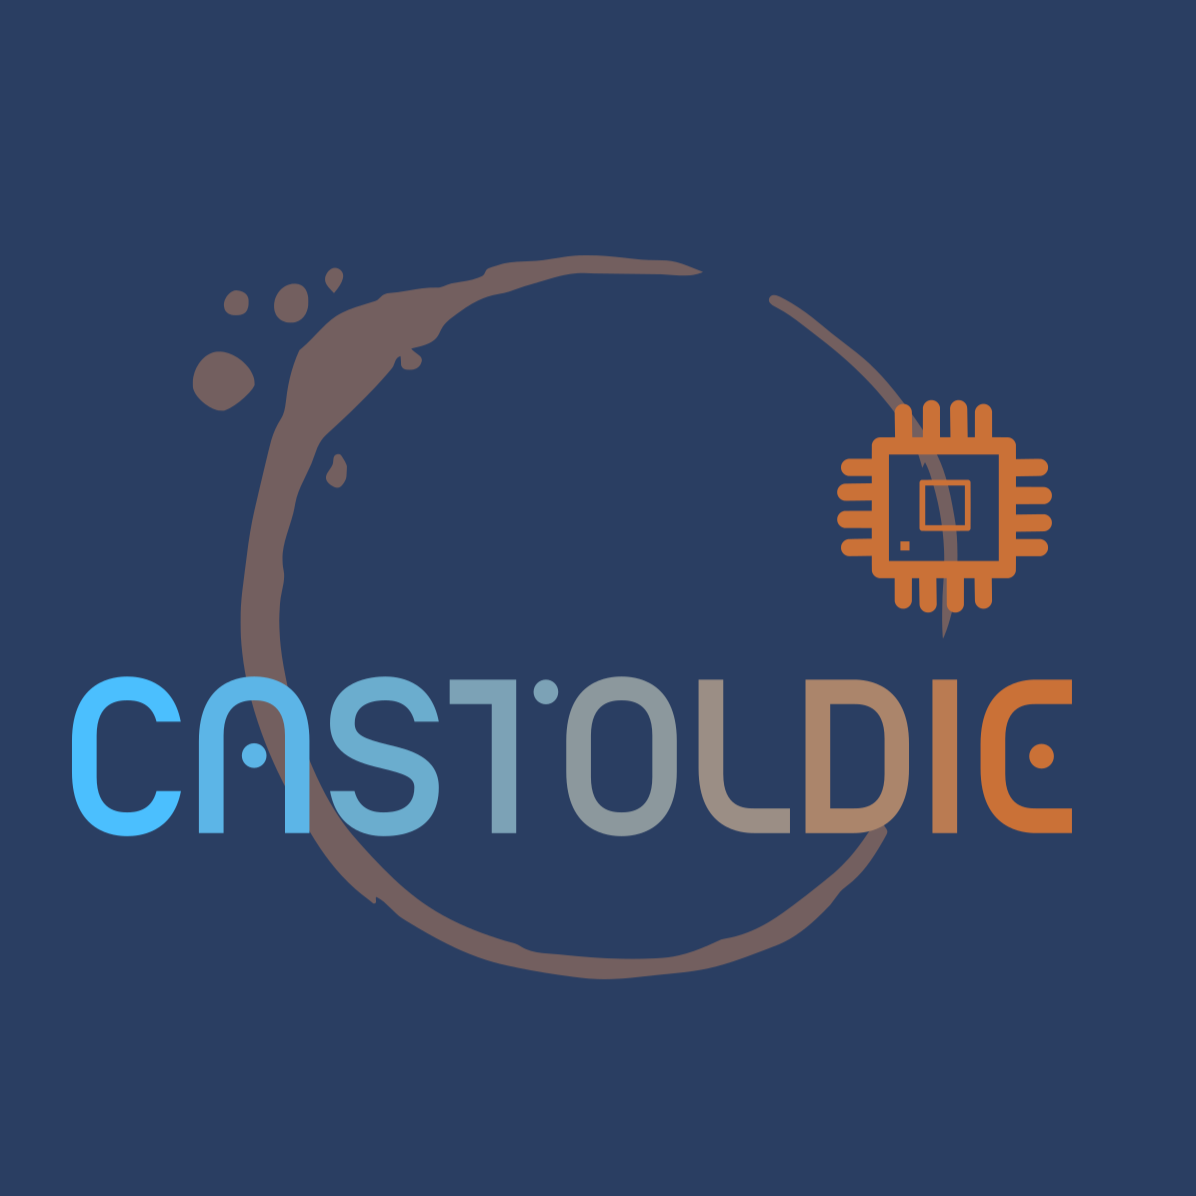 Castoldie Logo